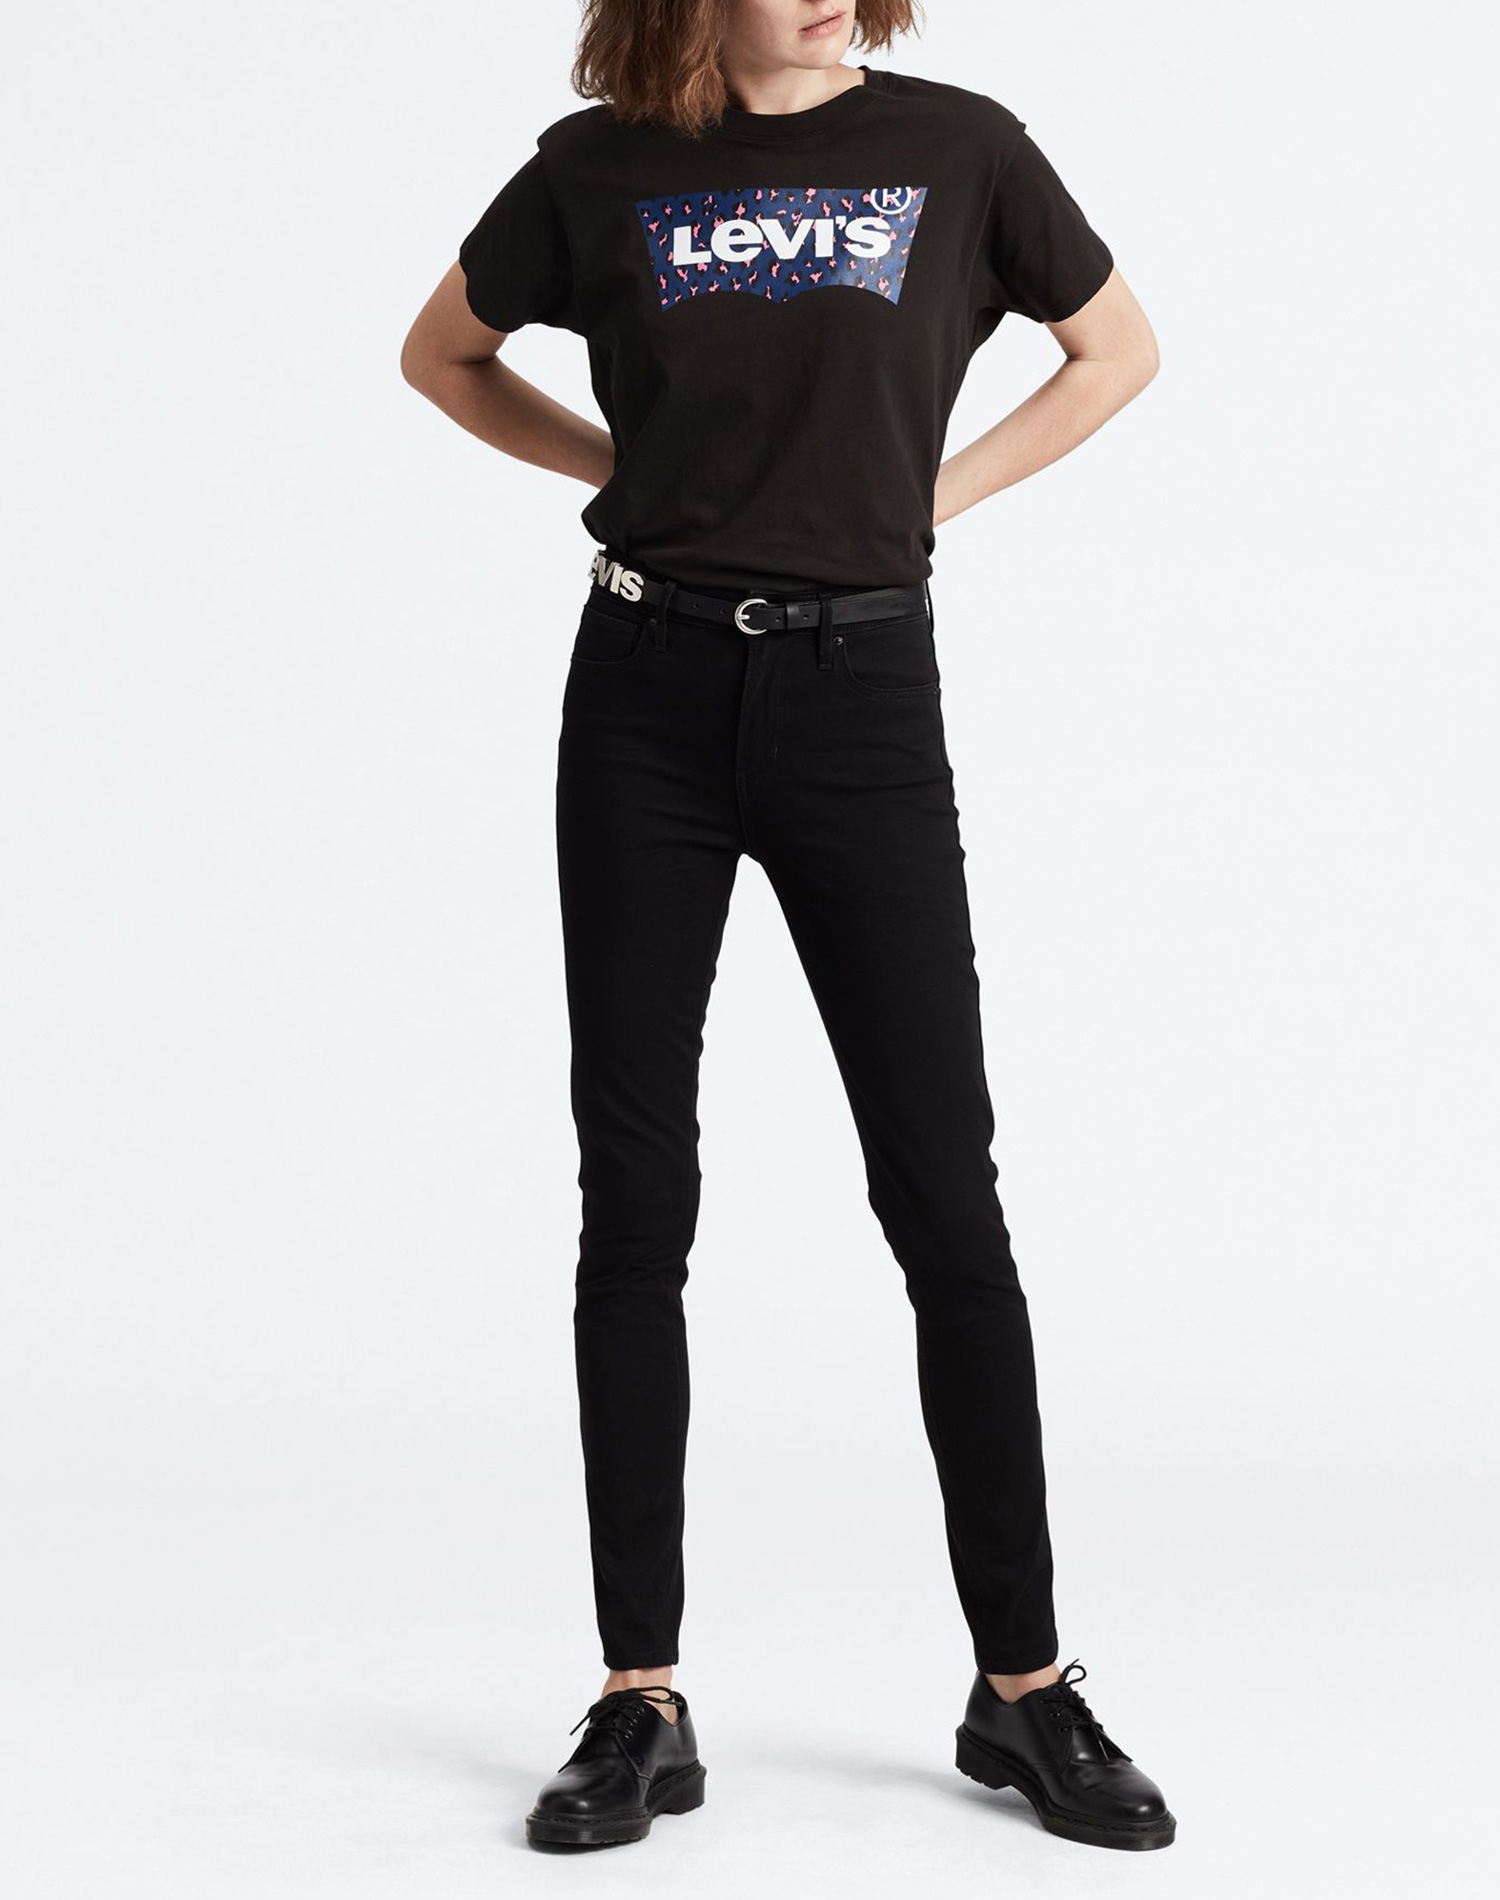 Levi's 721 high rise skinny pantalons texans de dona 18882-0233 negre